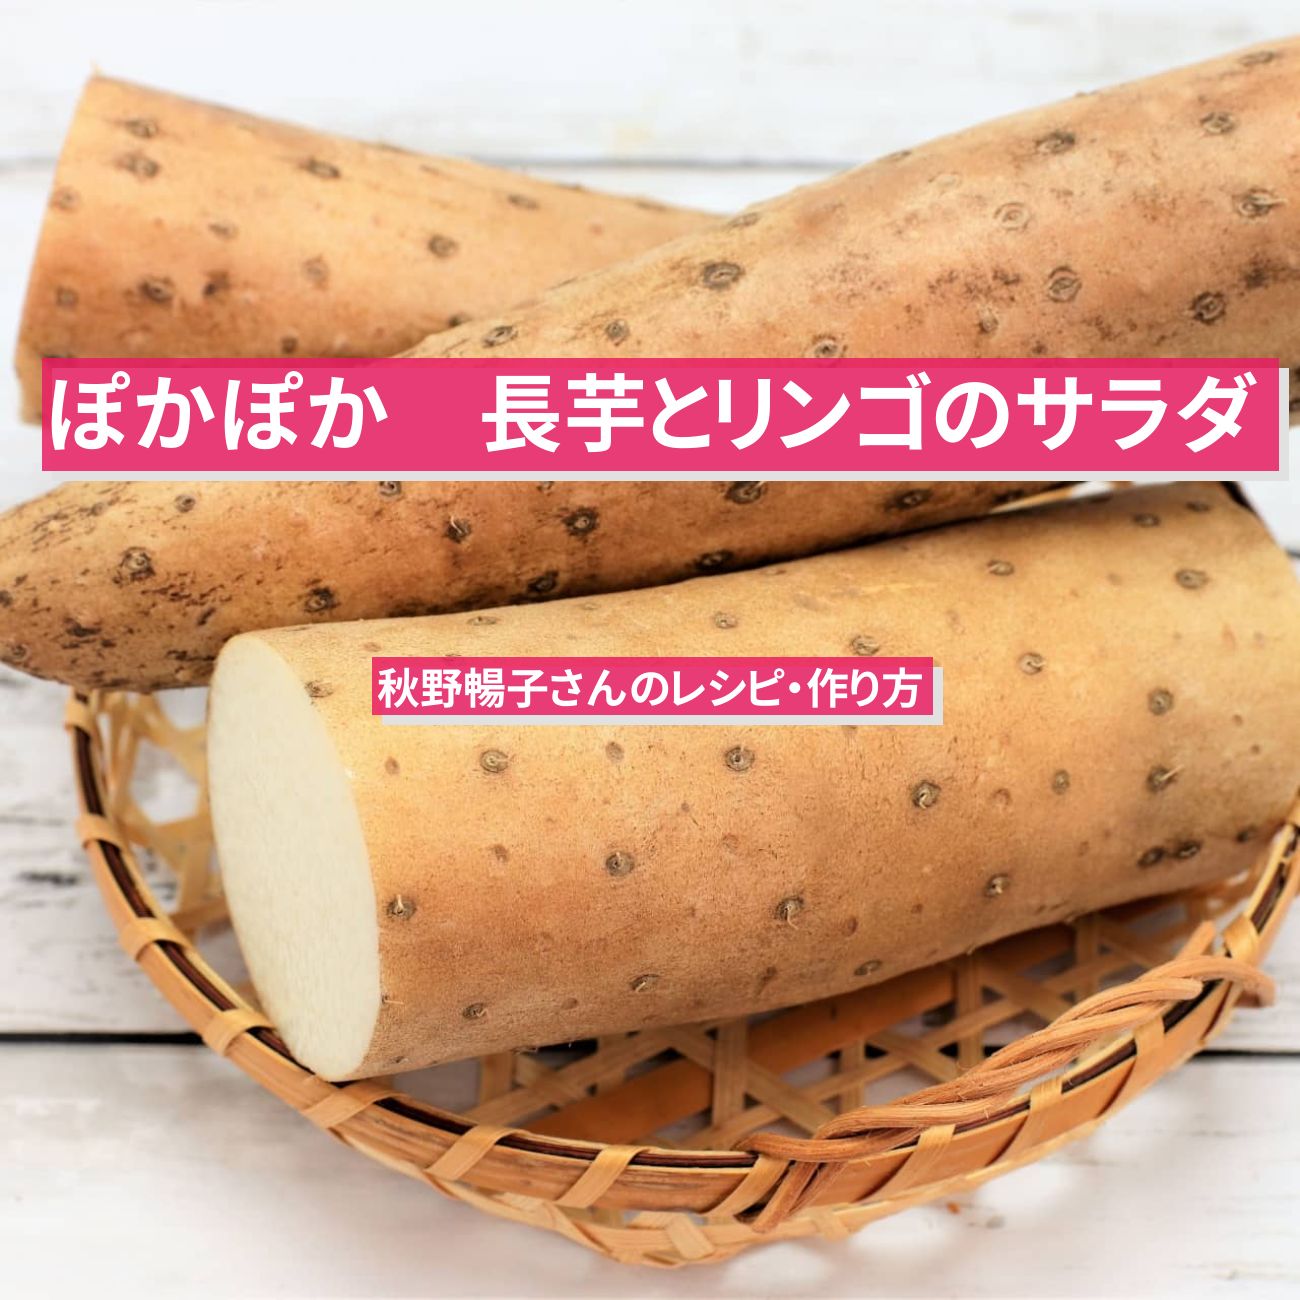 【ぽかぽか】『長芋とリンゴのサラダ』秋野暢子さんのレシピ・作り方